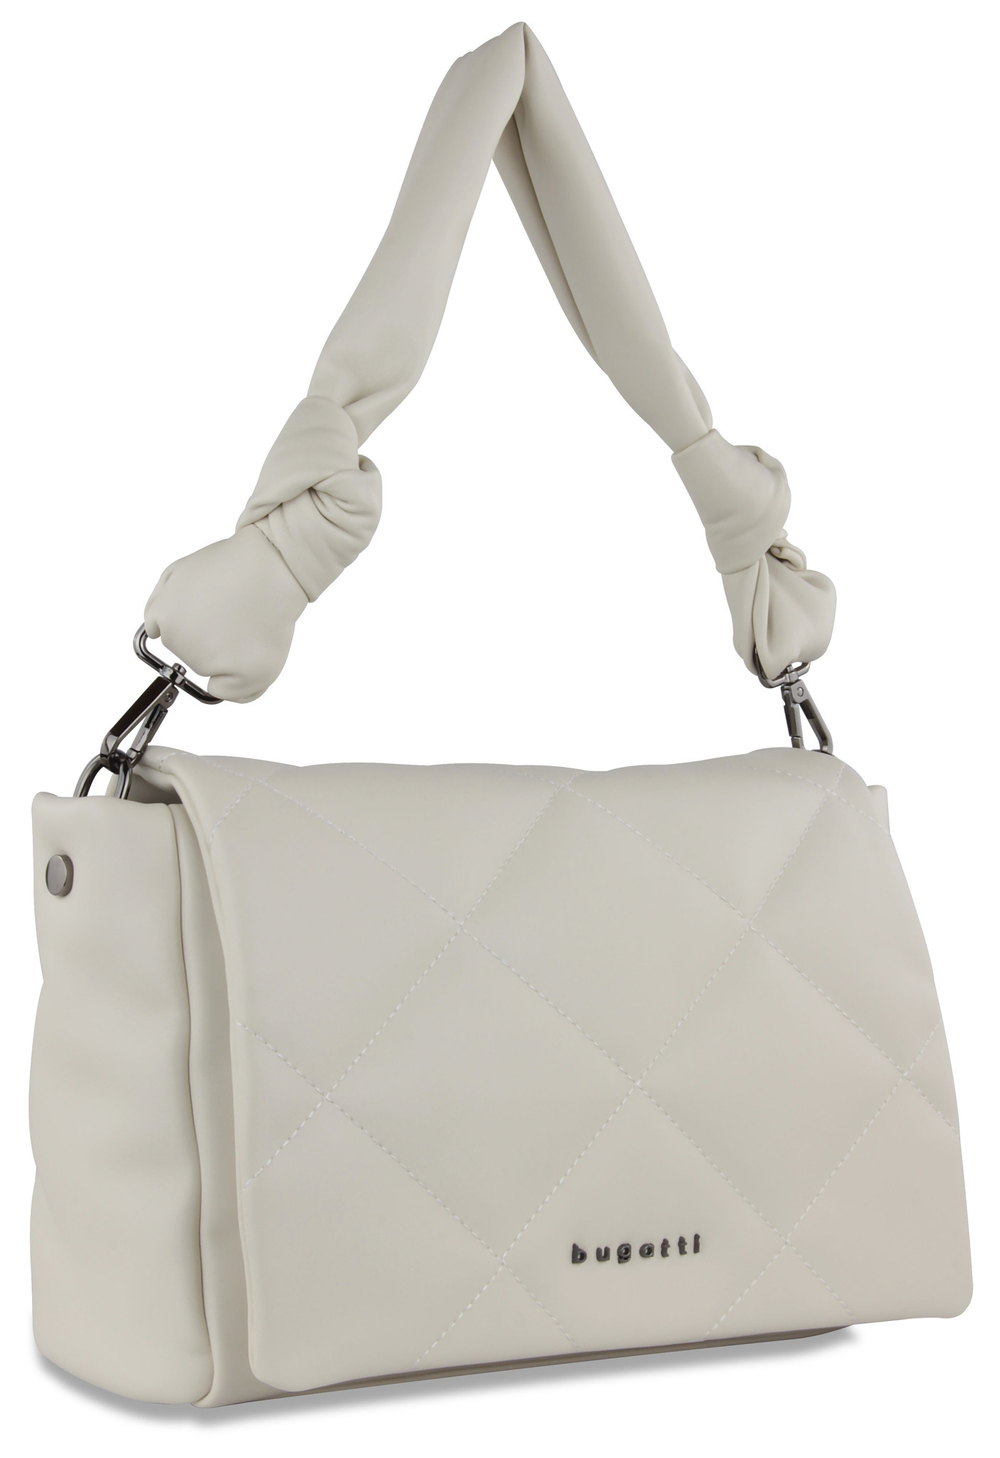 Фото сумка наплечная женская BUGATTI Cara белая полиуретан с гарантией